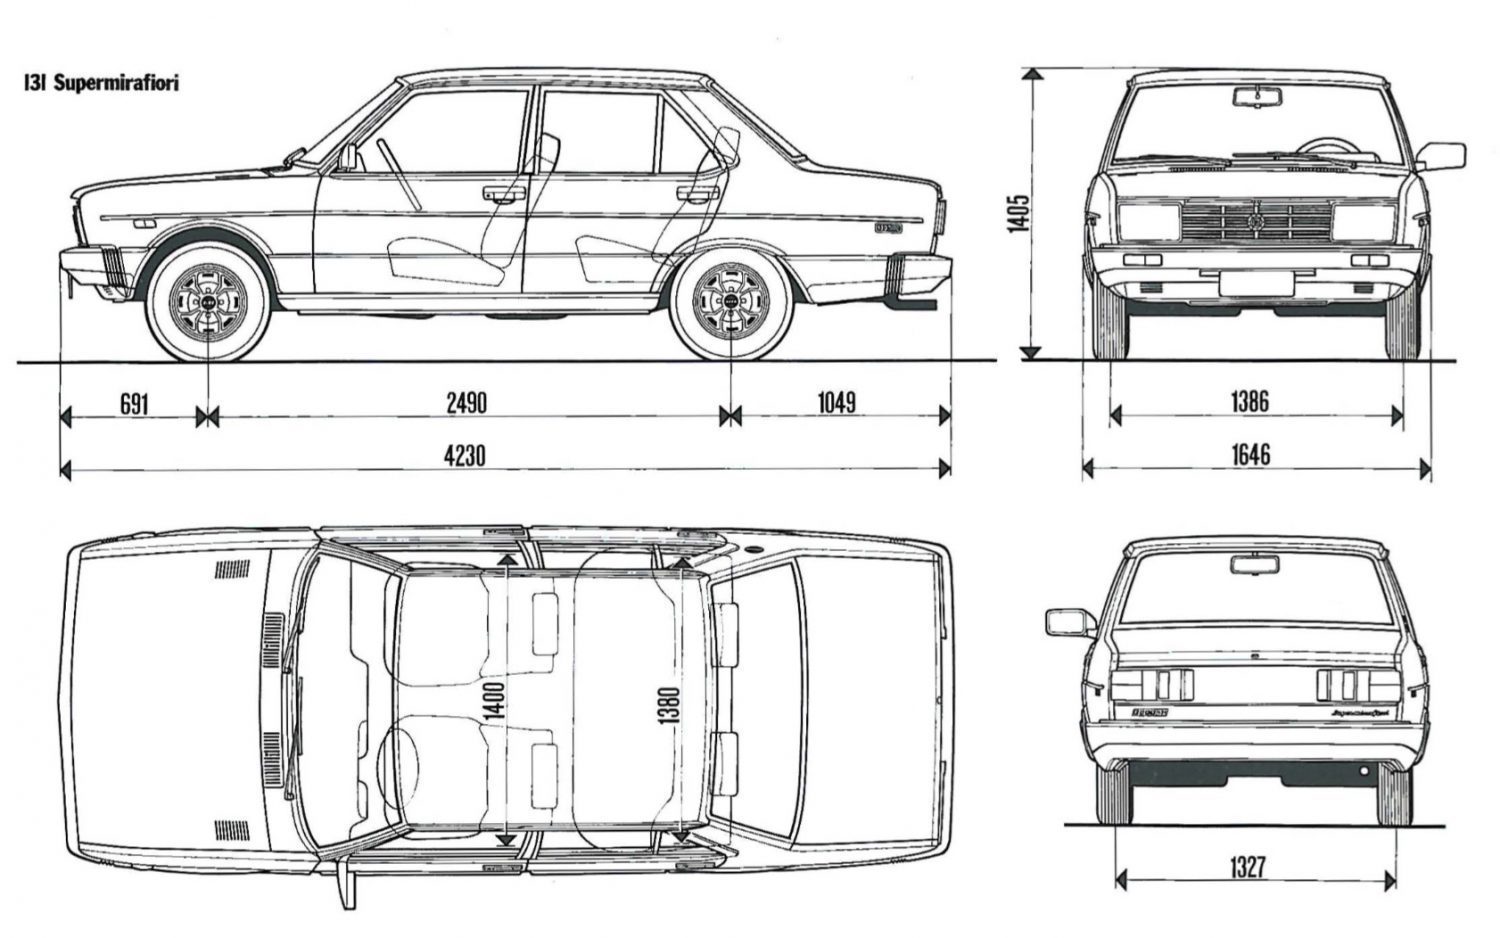 Fiat 131 terza serie, semplicemente indimenticabile